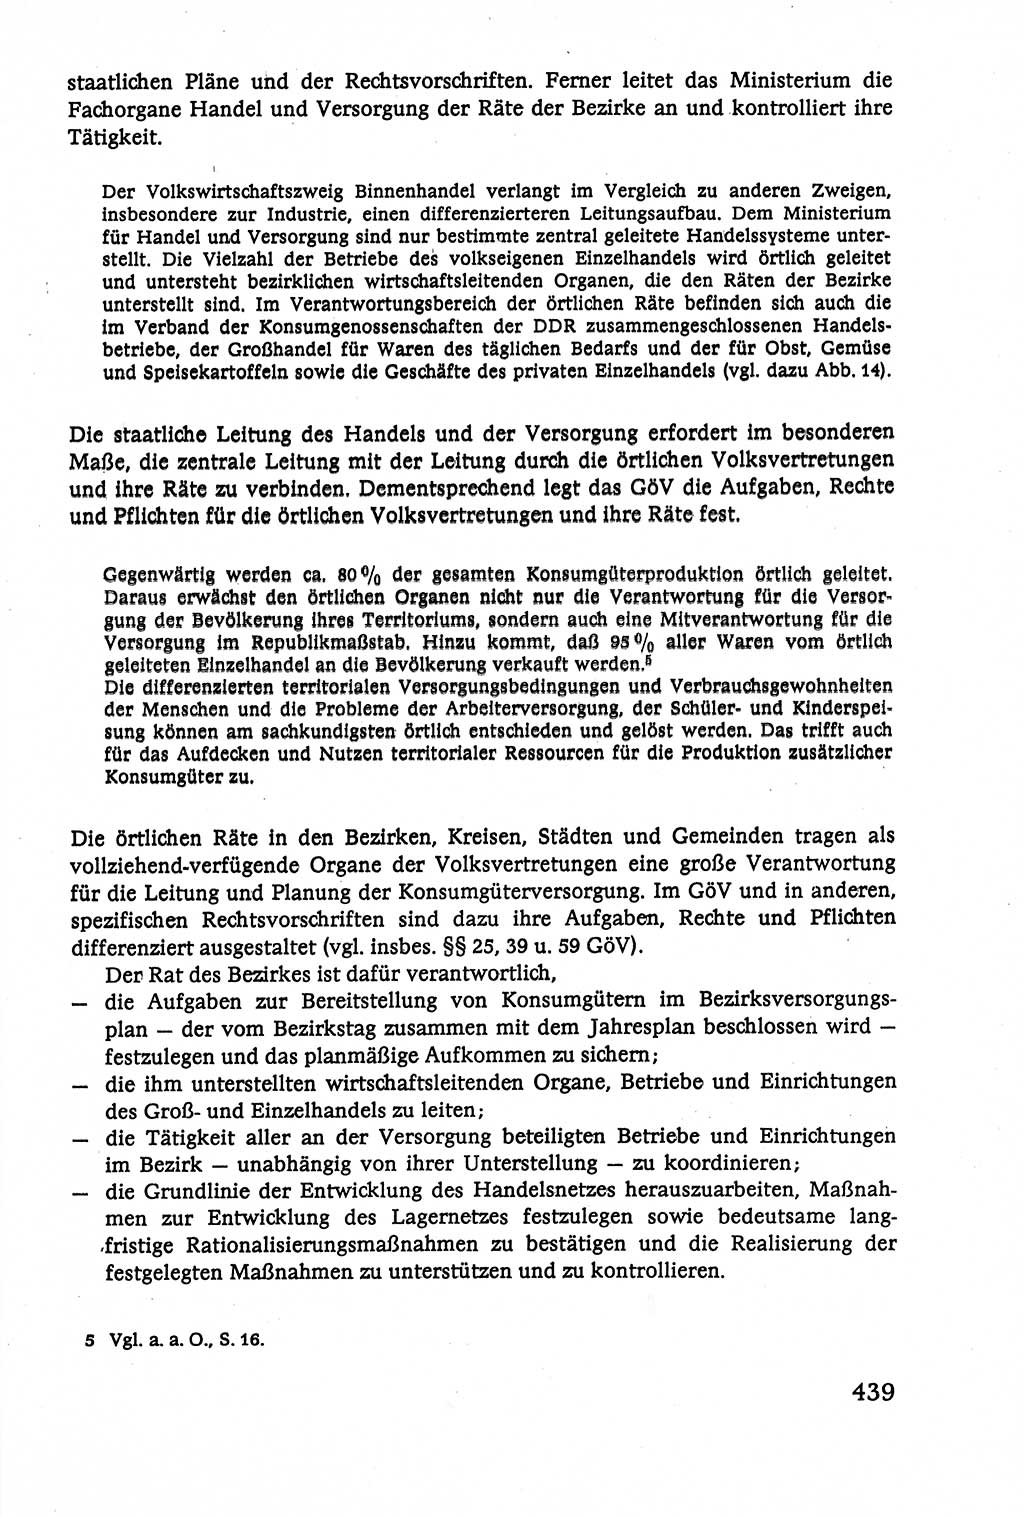 Verwaltungsrecht [Deutsche Demokratische Republik (DDR)], Lehrbuch 1979, Seite 439 (Verw.-R. DDR Lb. 1979, S. 439)